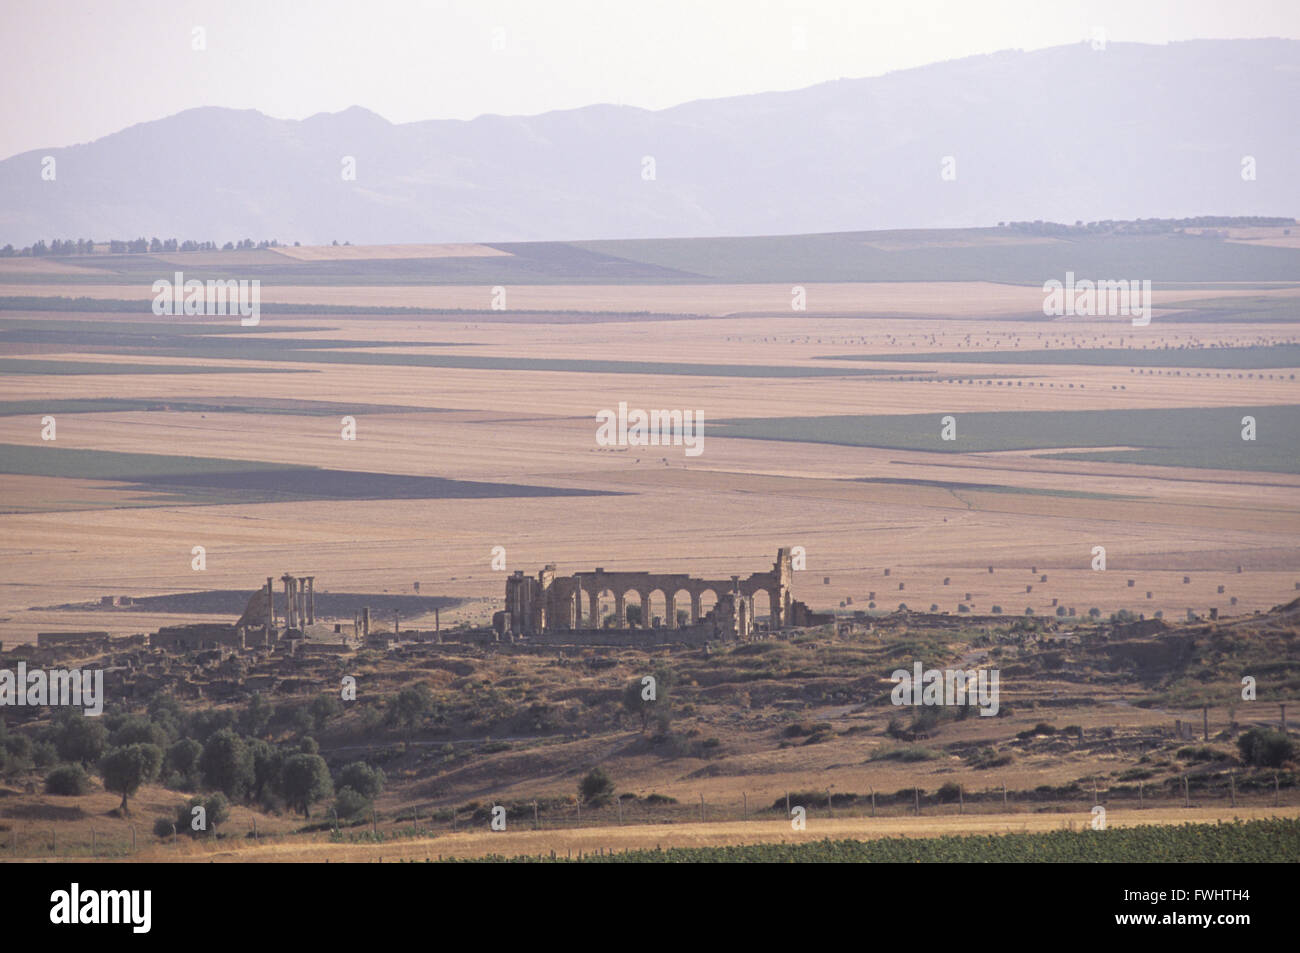 Volubillis è un'antica città romana in Marocco. Considerata l'antica capitale della Mauritania. Situato nei pressi di Meknes città. Foto Stock